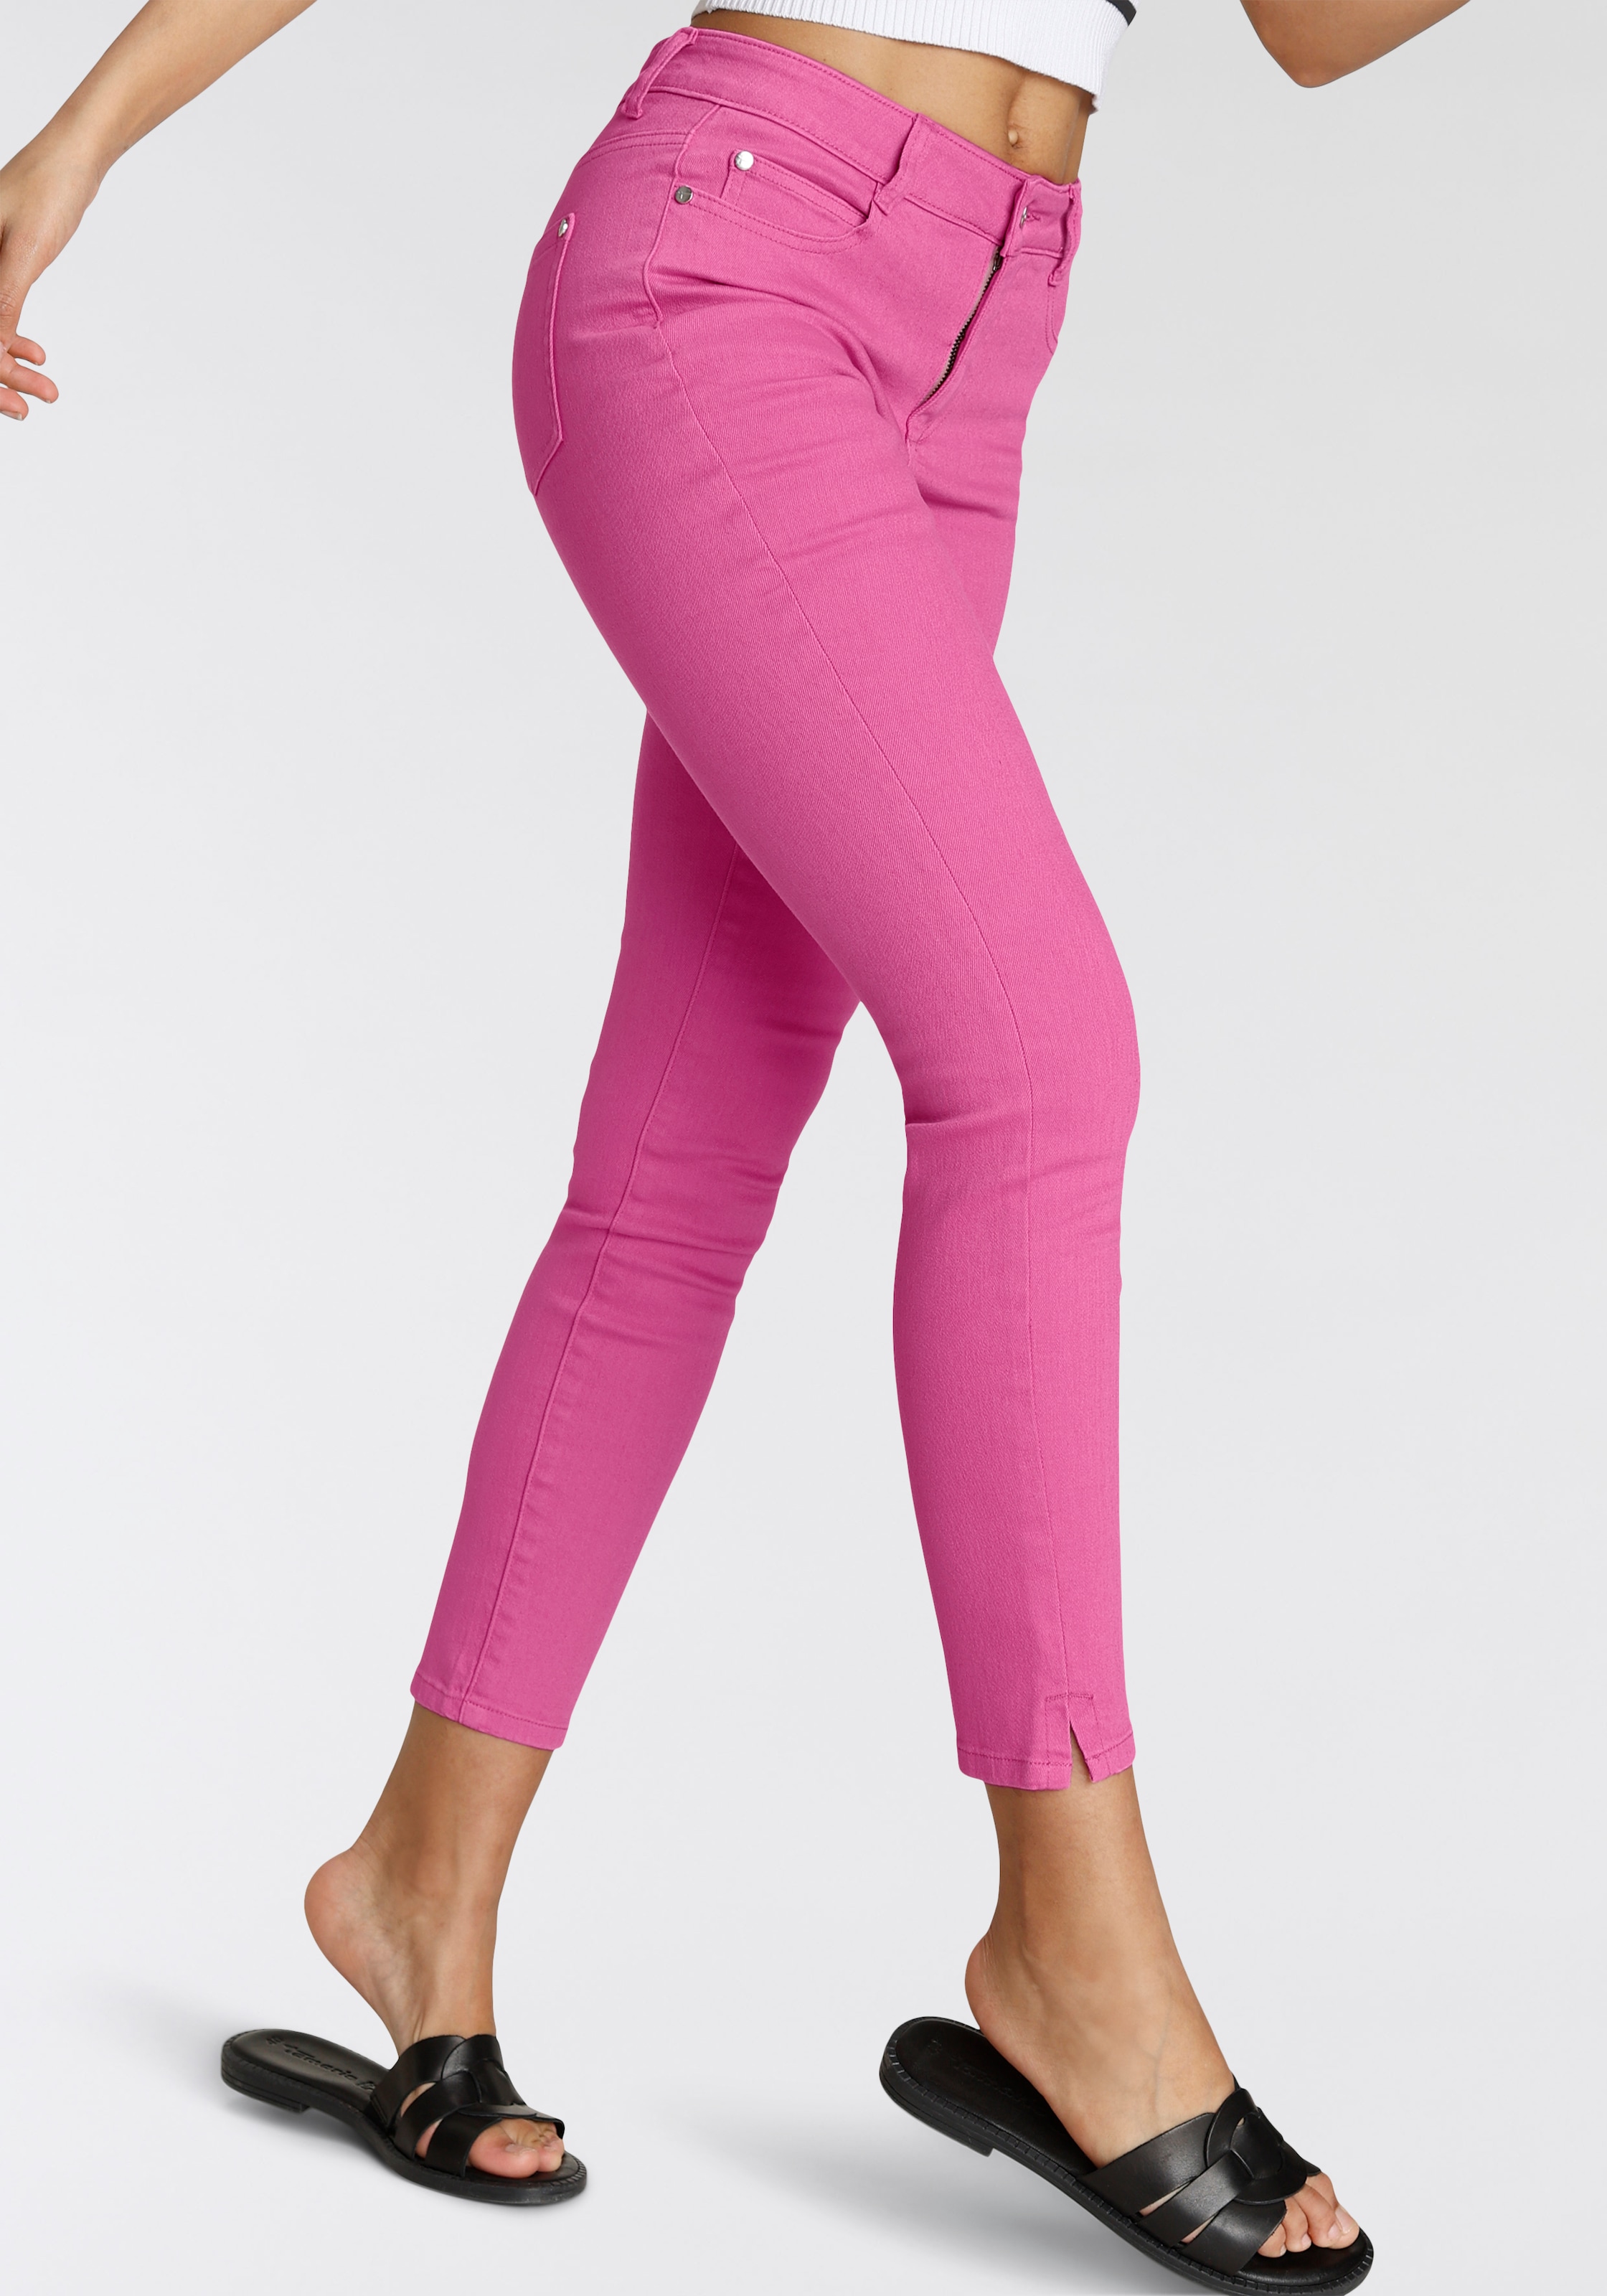 Tamaris Coloured-Denim-Look OTTO bei im 5-Pocket-Jeans, kaufen